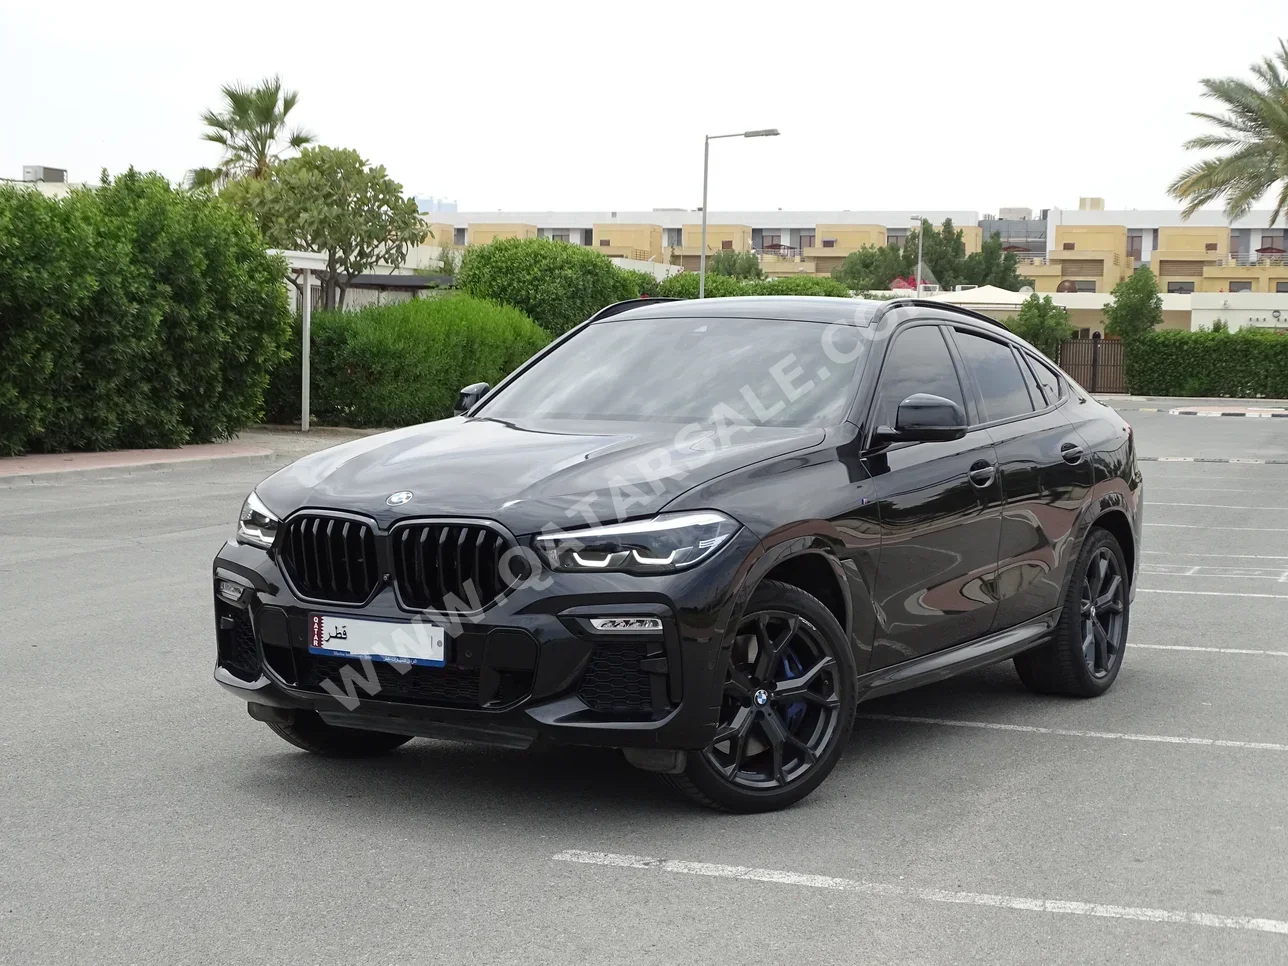  BMW  X-Series  X6  2020  Automatic  47,000 Km  6 Cylinder  Four Wheel Drive (4WD)  SUV  Black  With Warranty